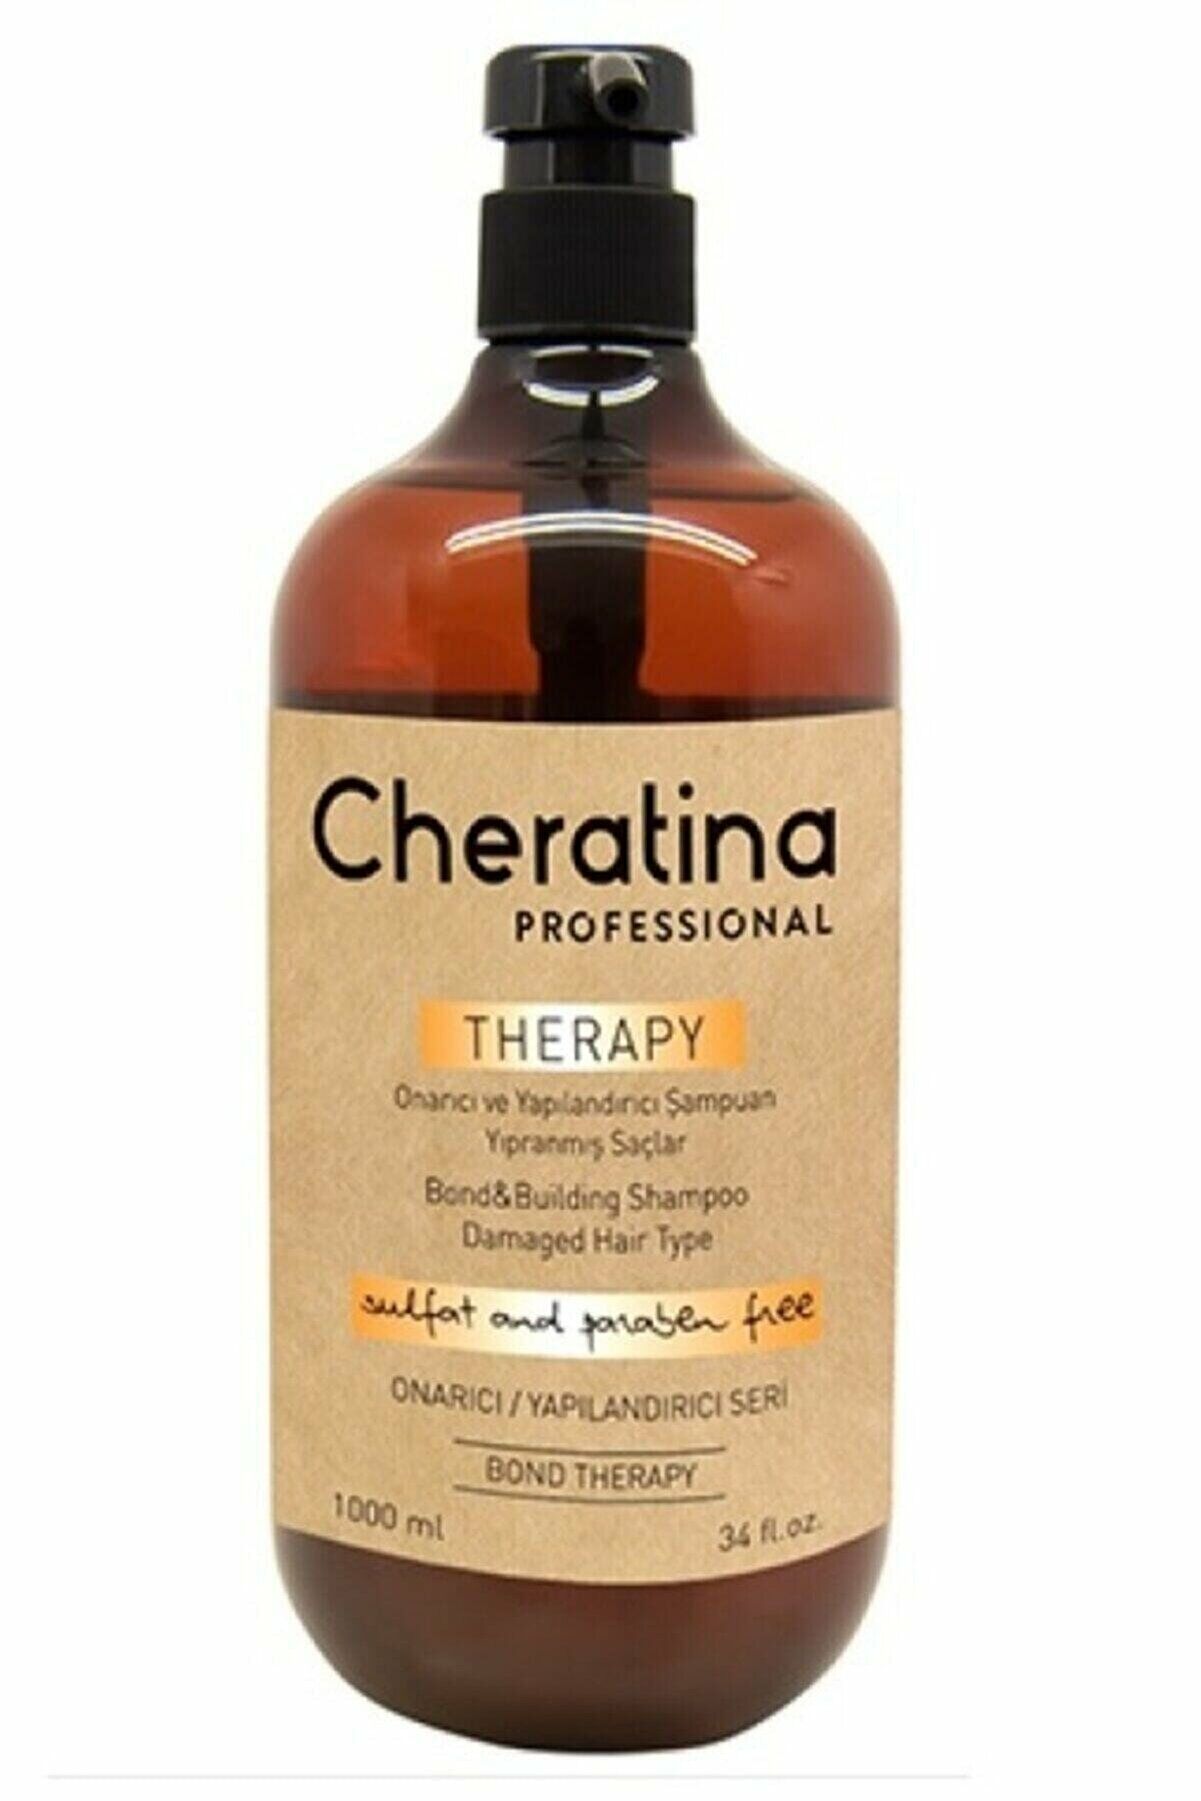 Cheratina Bone Therapy Shampoo - Tüm Saçlar için Onarıcı ve Yapılandırıcı Bakım Şampuanı 1000 Ml.